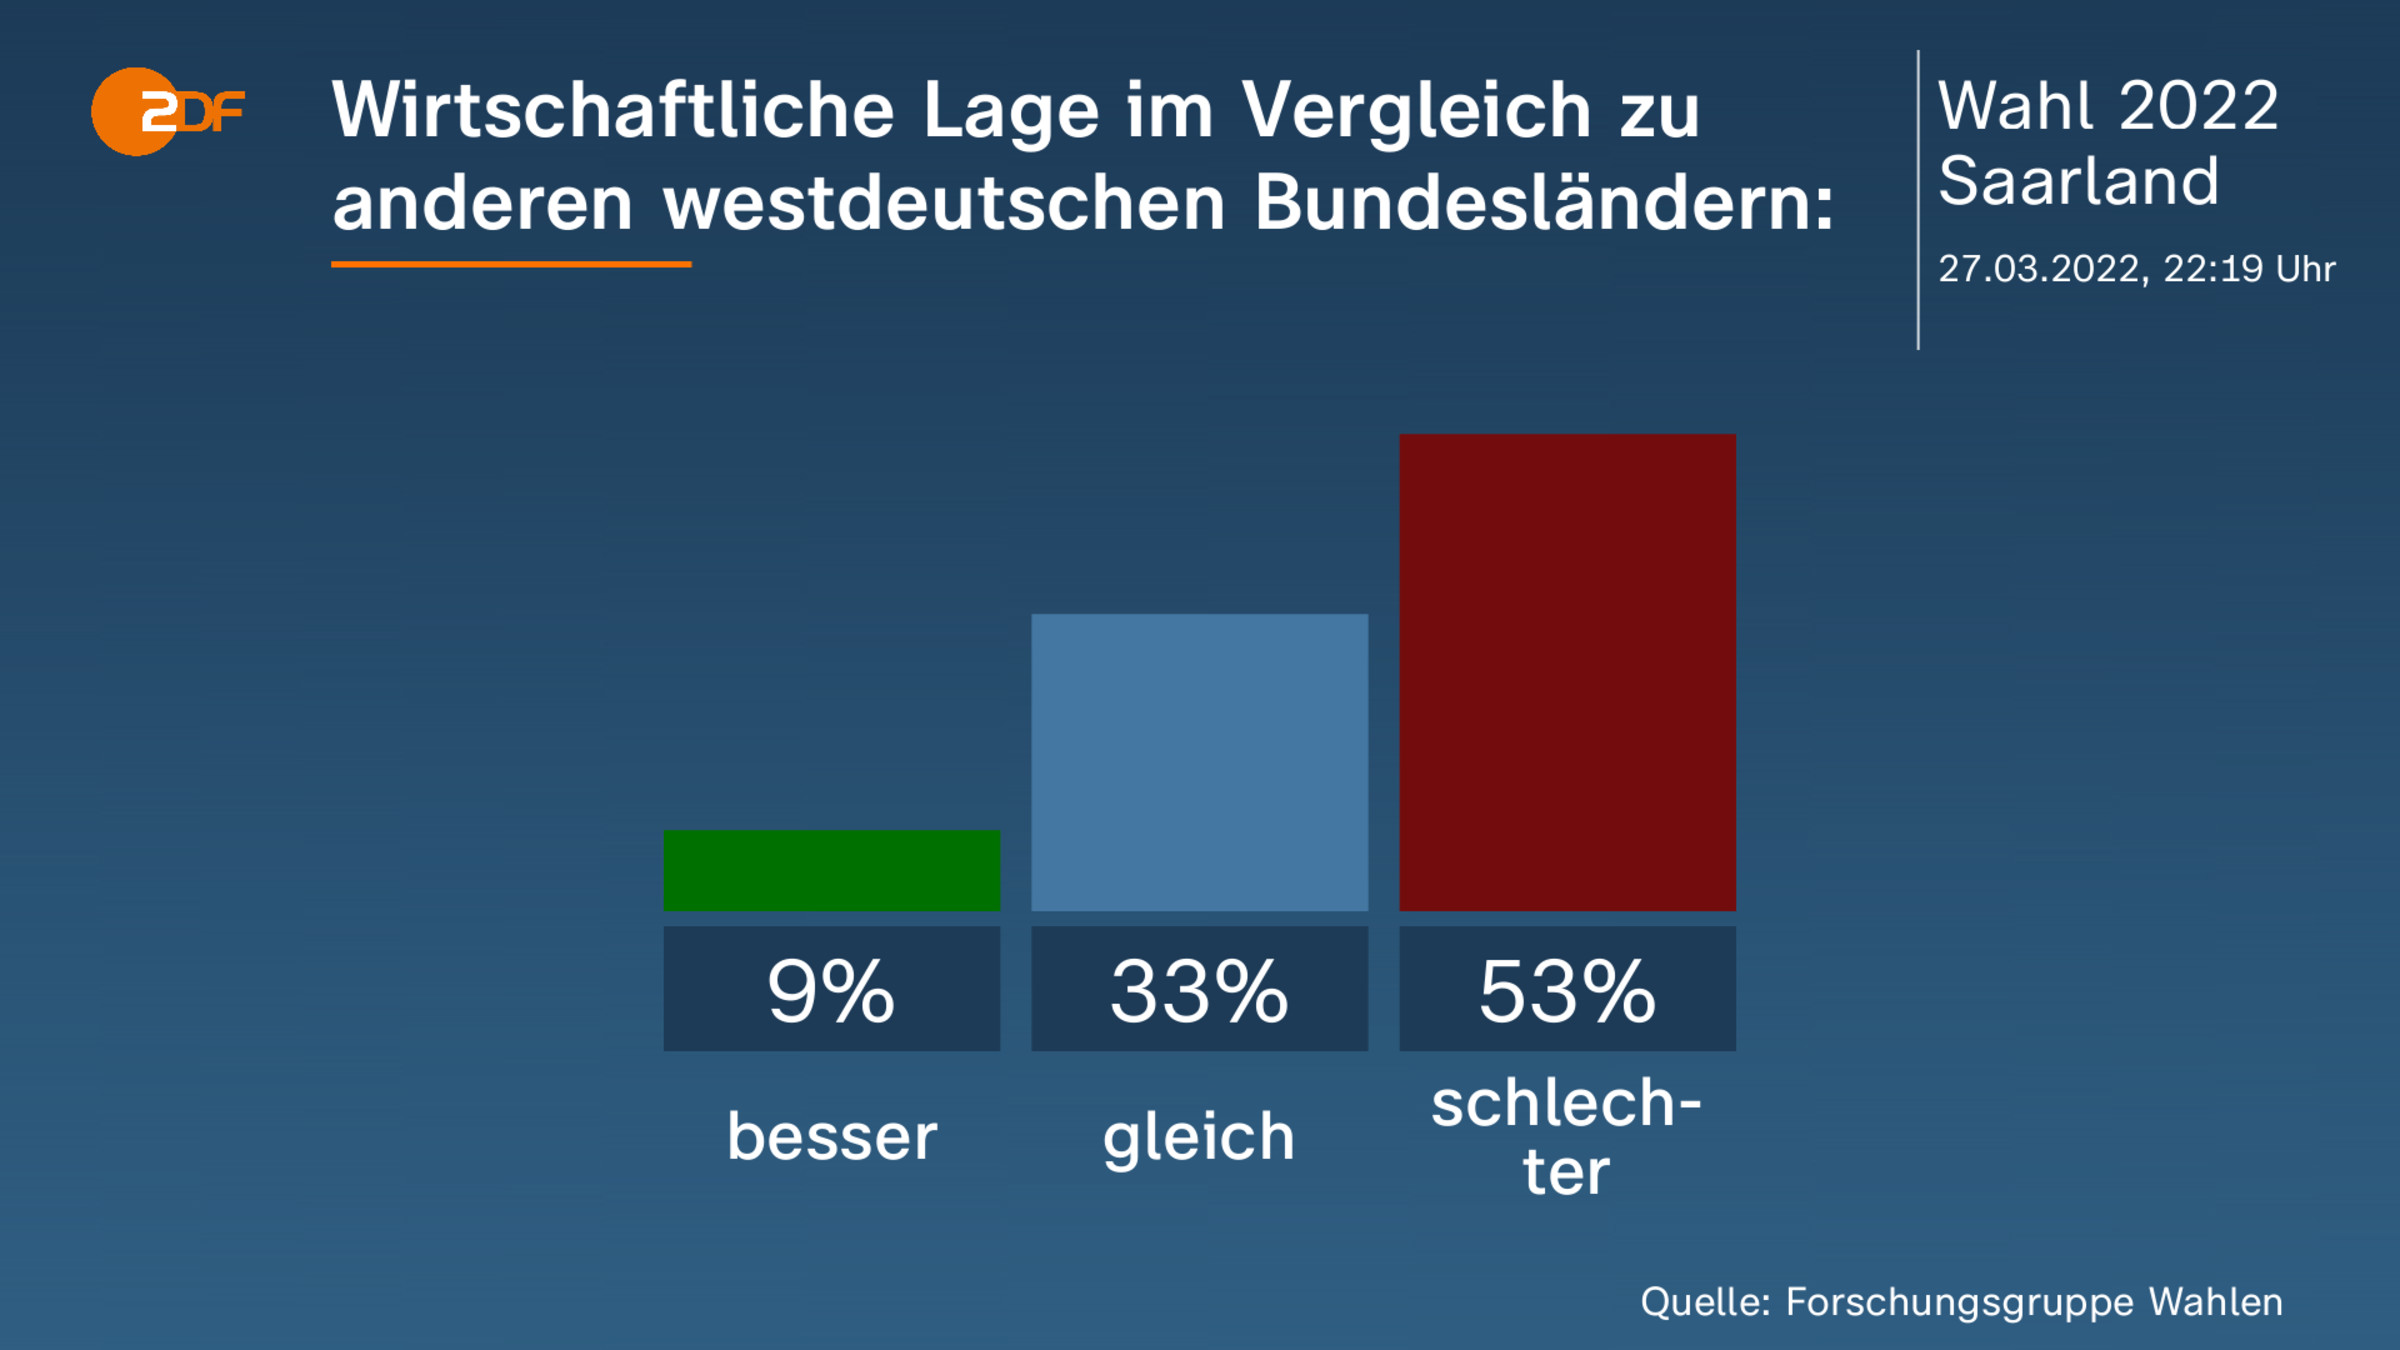 Wirtschaftliche Lage im Vergleich zu anderen westdeutschen Bundesländern: 